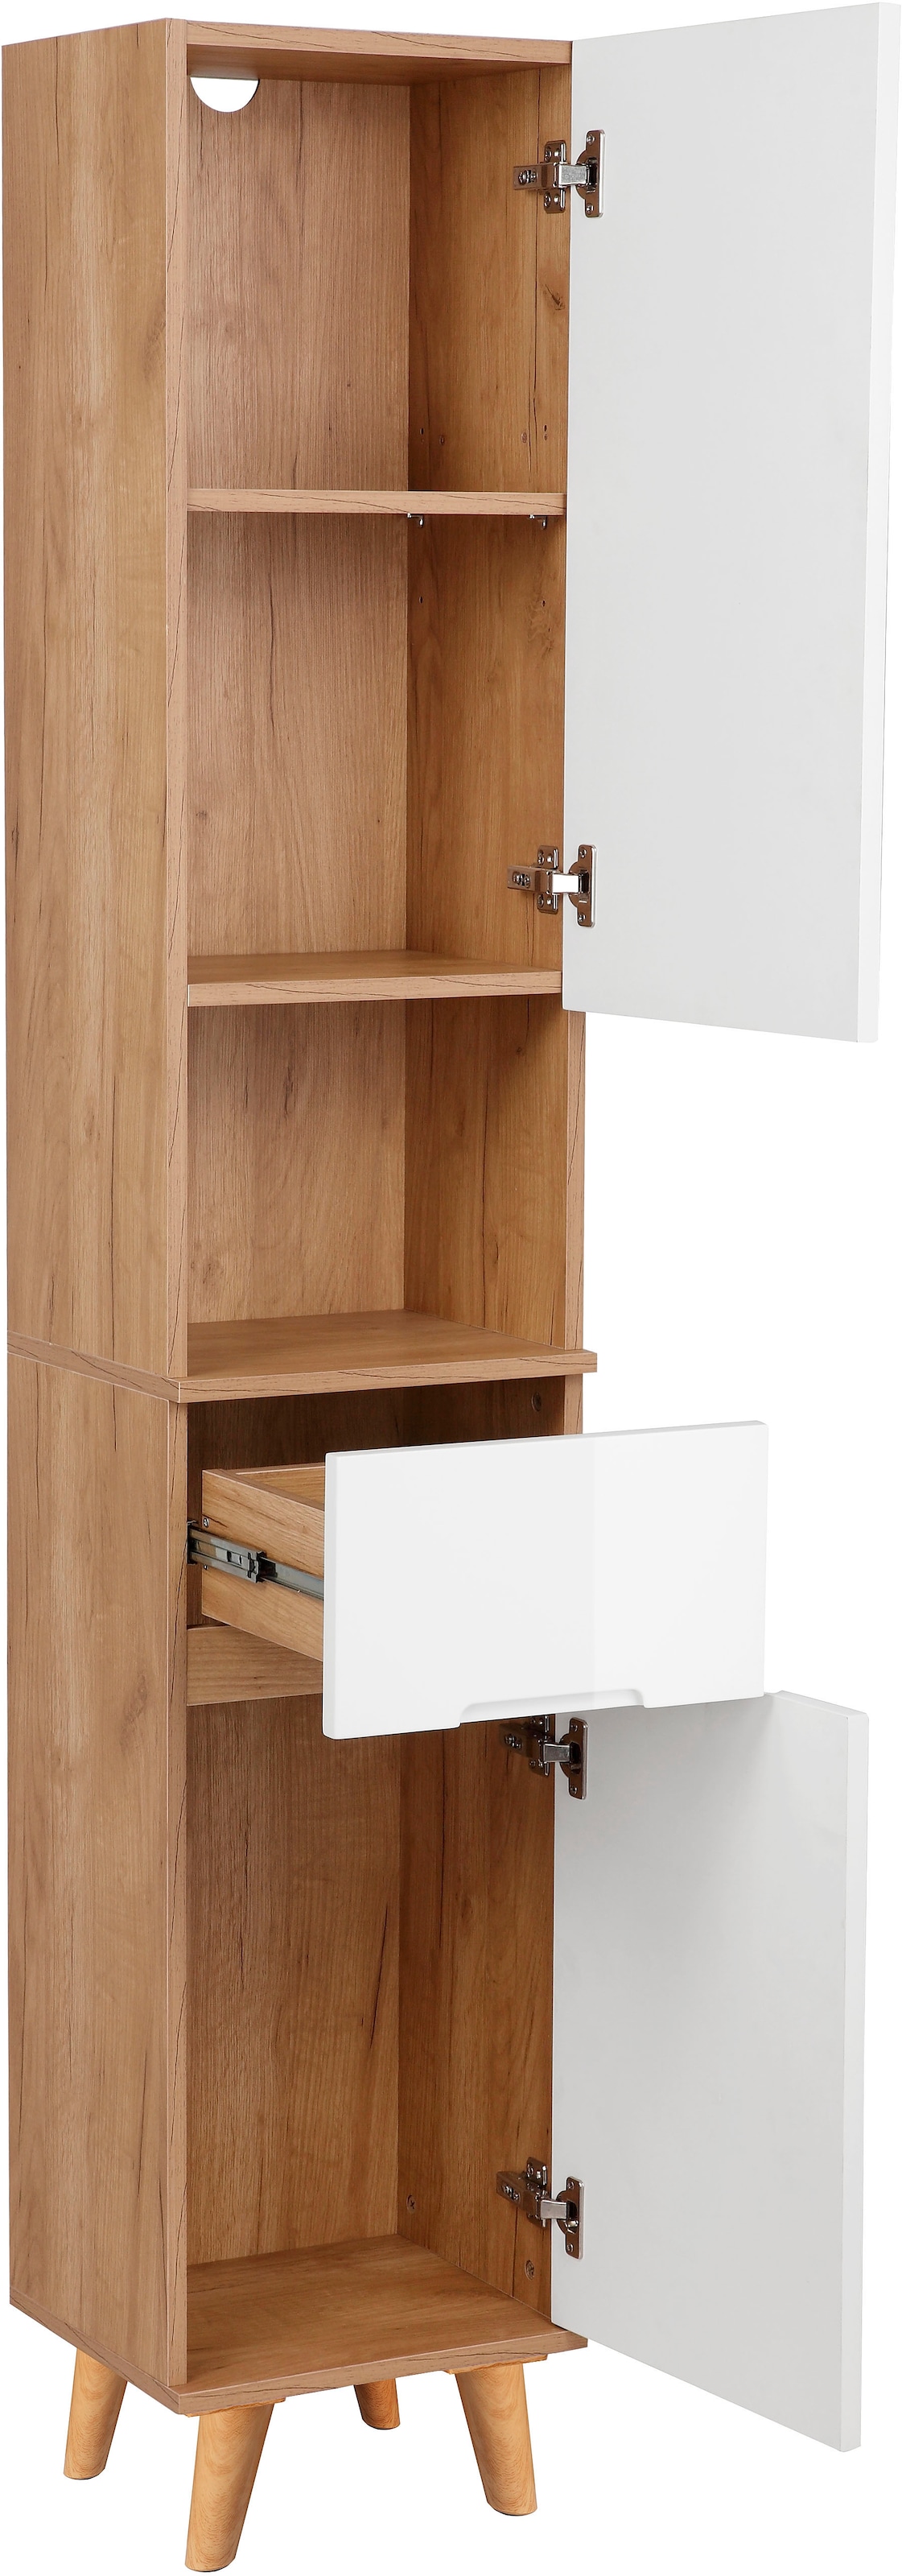 andas Hochschrank »Lund Badschrank skandinavisches Design mit viel Stauraum«, Badmöbel, 2 Türen und 1 Schublade, Breite 35cm